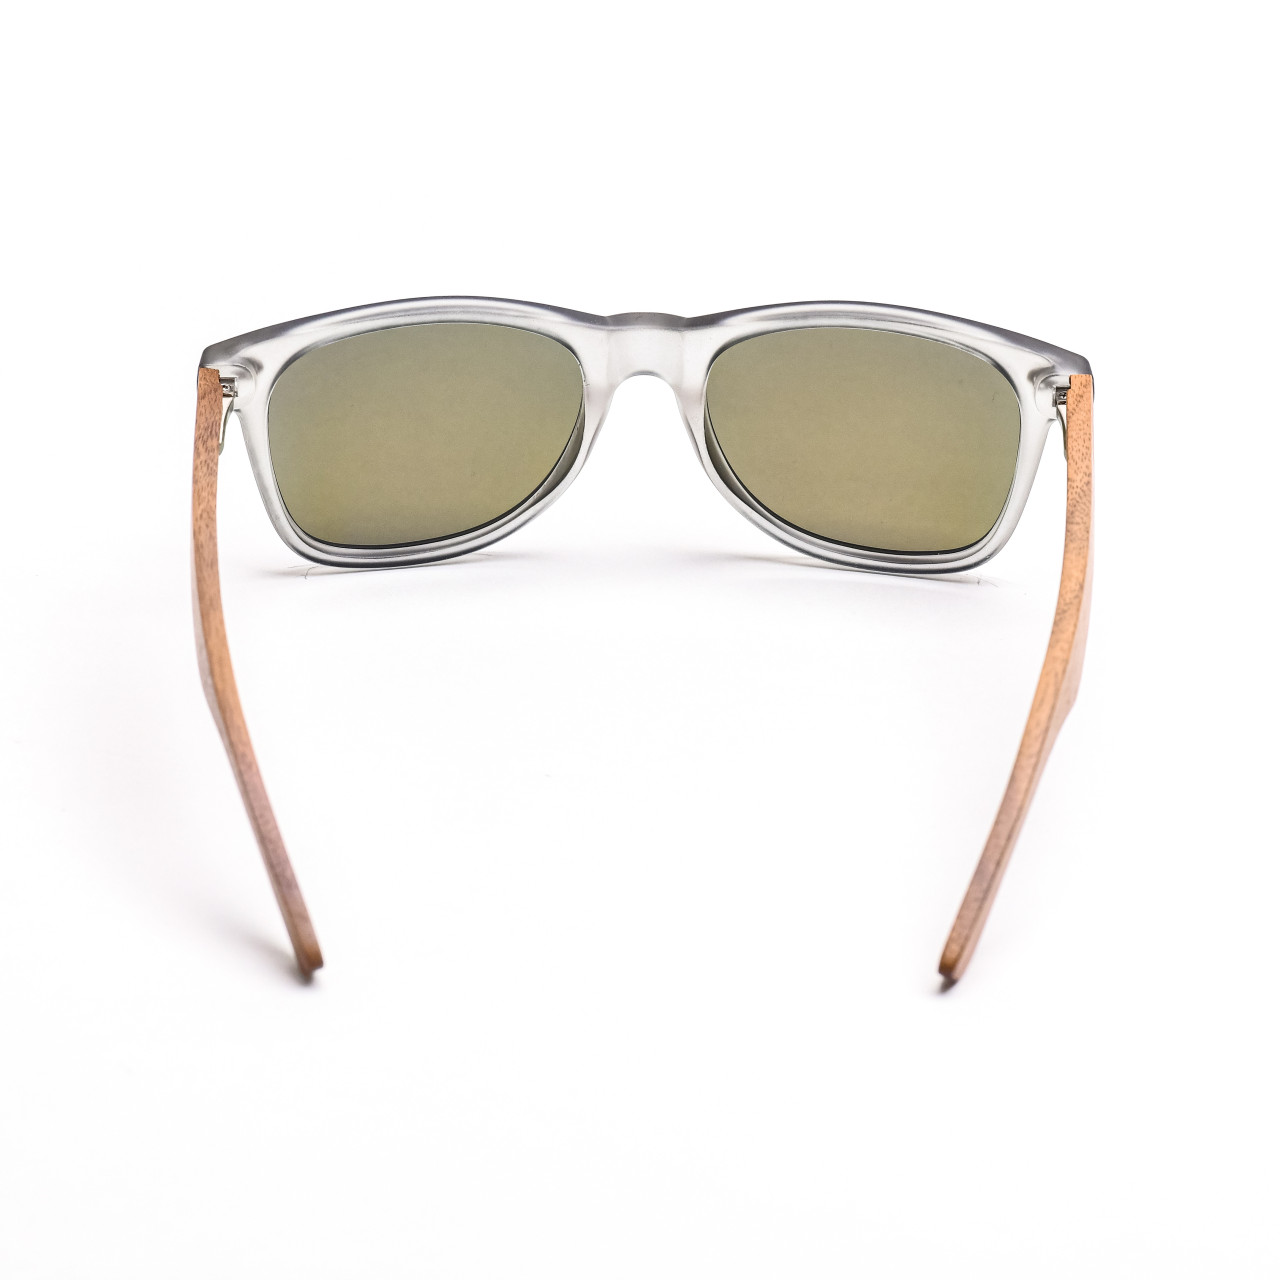 Brýle Classic – zlaté čočky + průhledné obroučky + buk